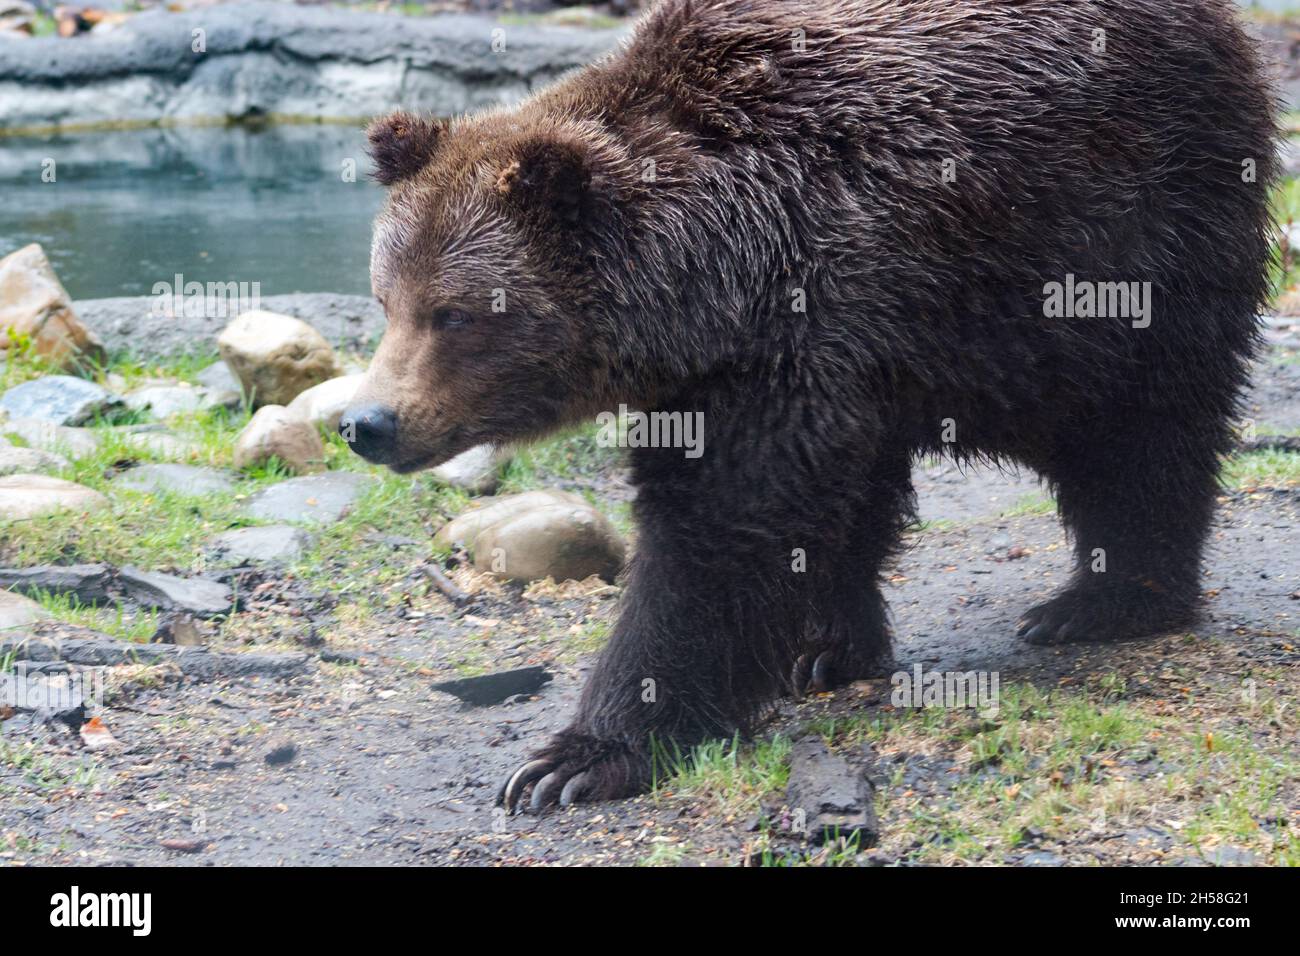 L'ours grizzli marche devant la caméra sous la pluie. Trou d'eau derrière lui, griffes visibles, rochers, boue et sol couvert d'herbe Banque D'Images